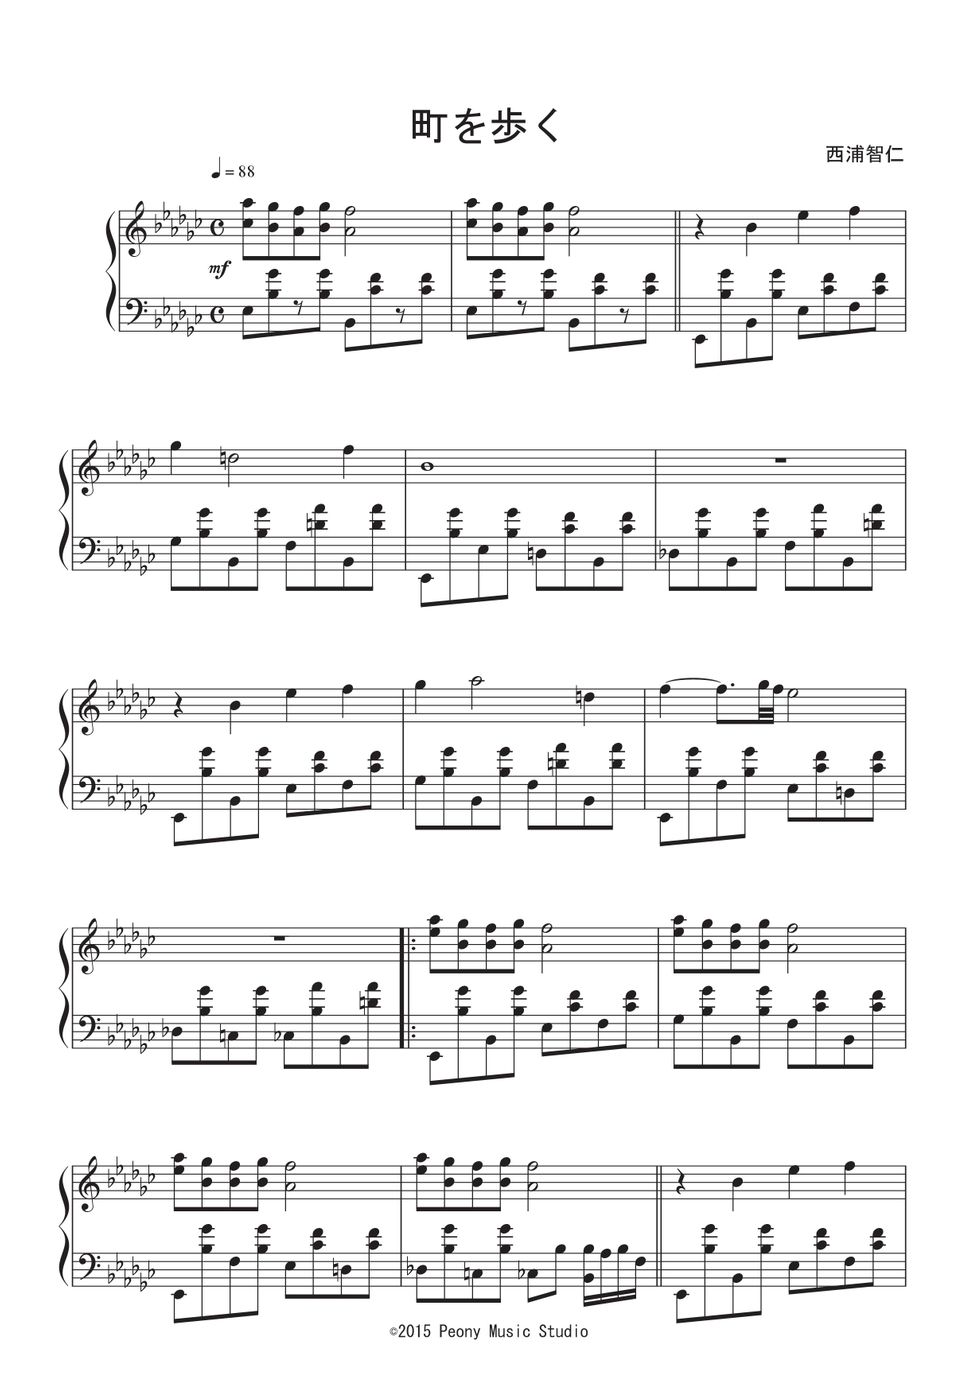 レイトン教授 ピアノ楽譜 - 楽器/器材